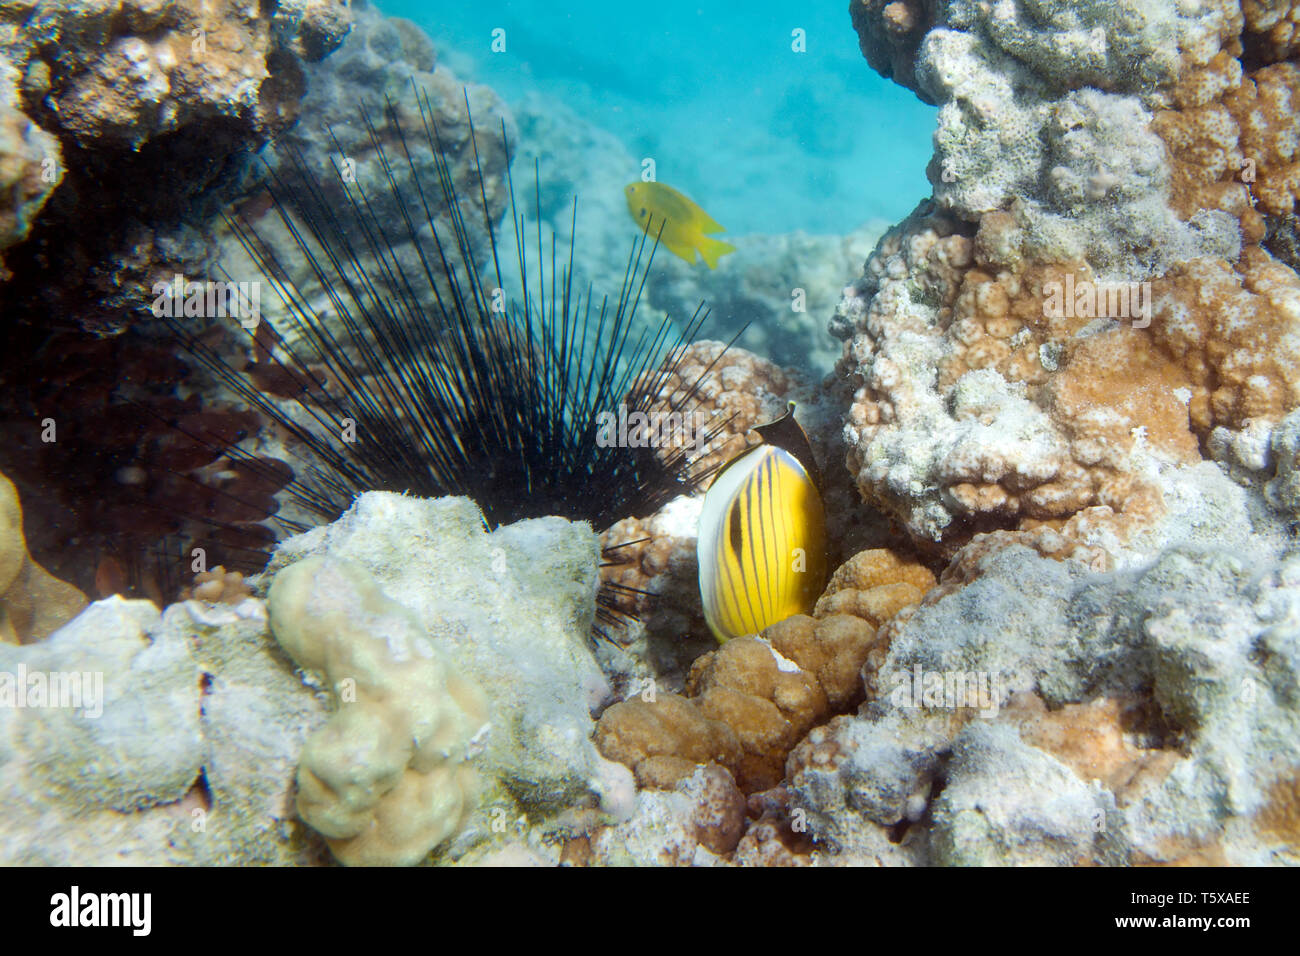 Allungate la spina dorsale dei ricci di mare. Diadema setosum. La vita subacquea del Mar Rosso in Egitto. I pesci di acqua salata e Coral reef di colonia. La luce del sole nelle profonde acque blu Foto Stock